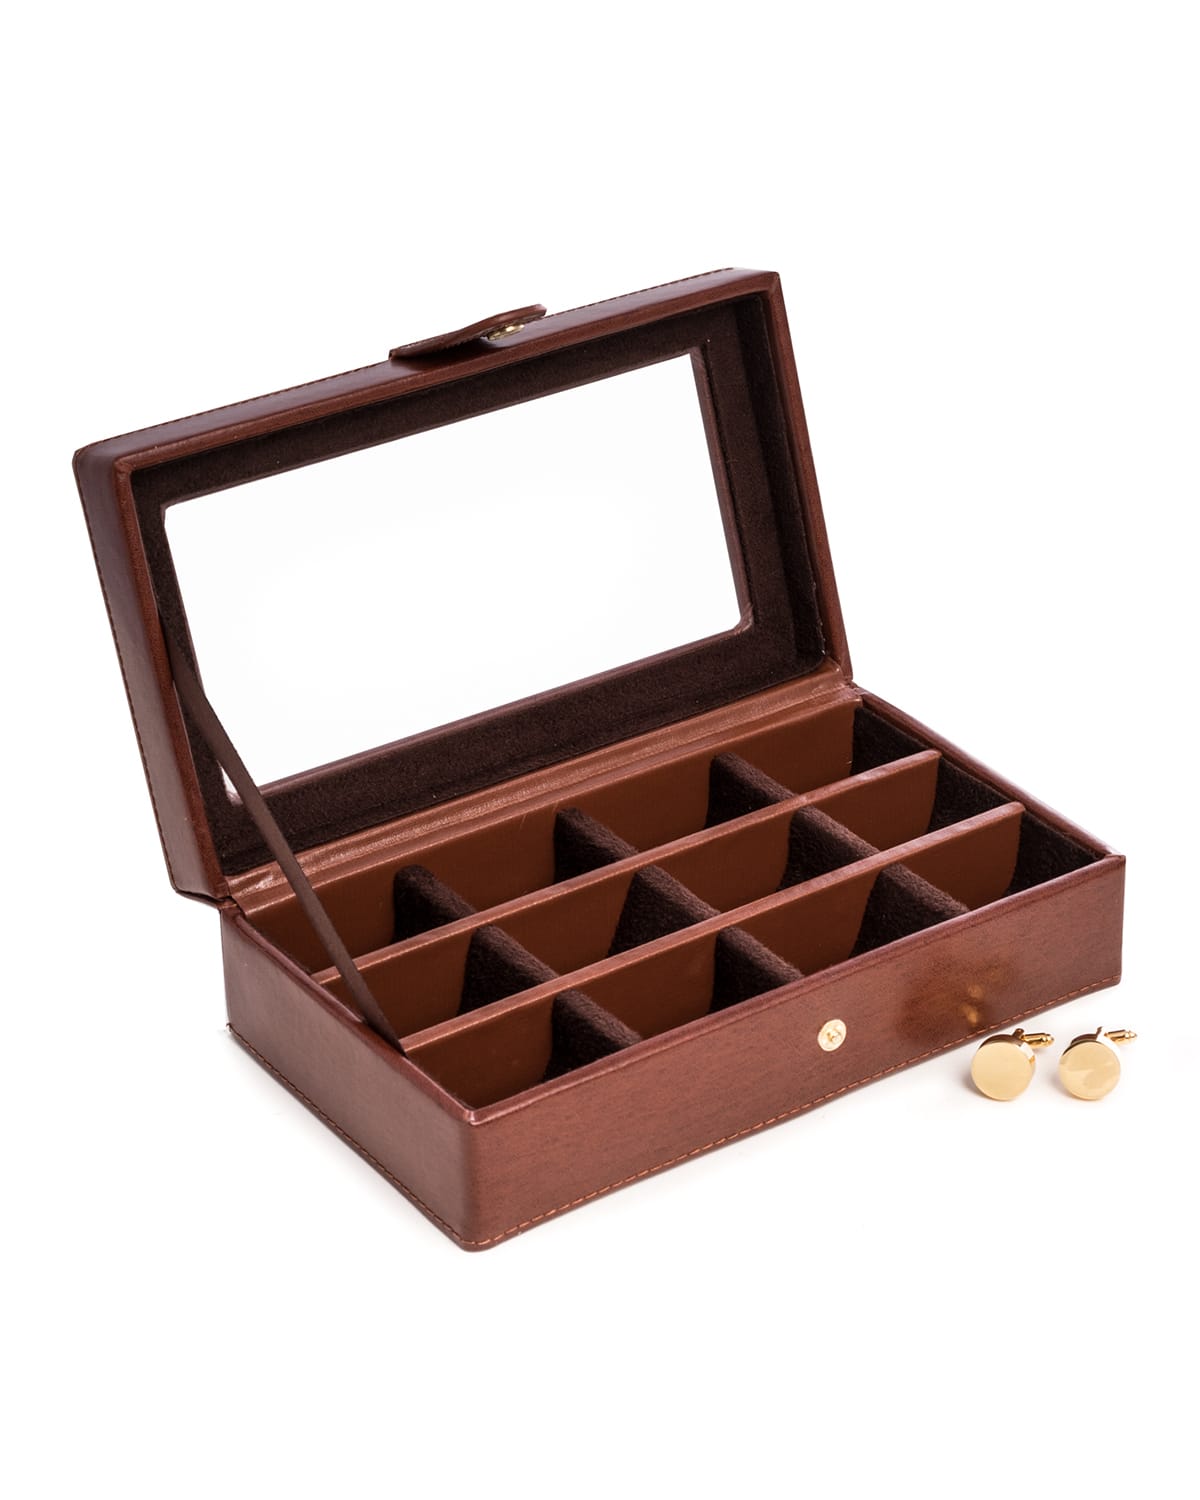 Shop Bey-berk Men's 12-cufflink Leather Storage Box W/ Glass Top In Brown